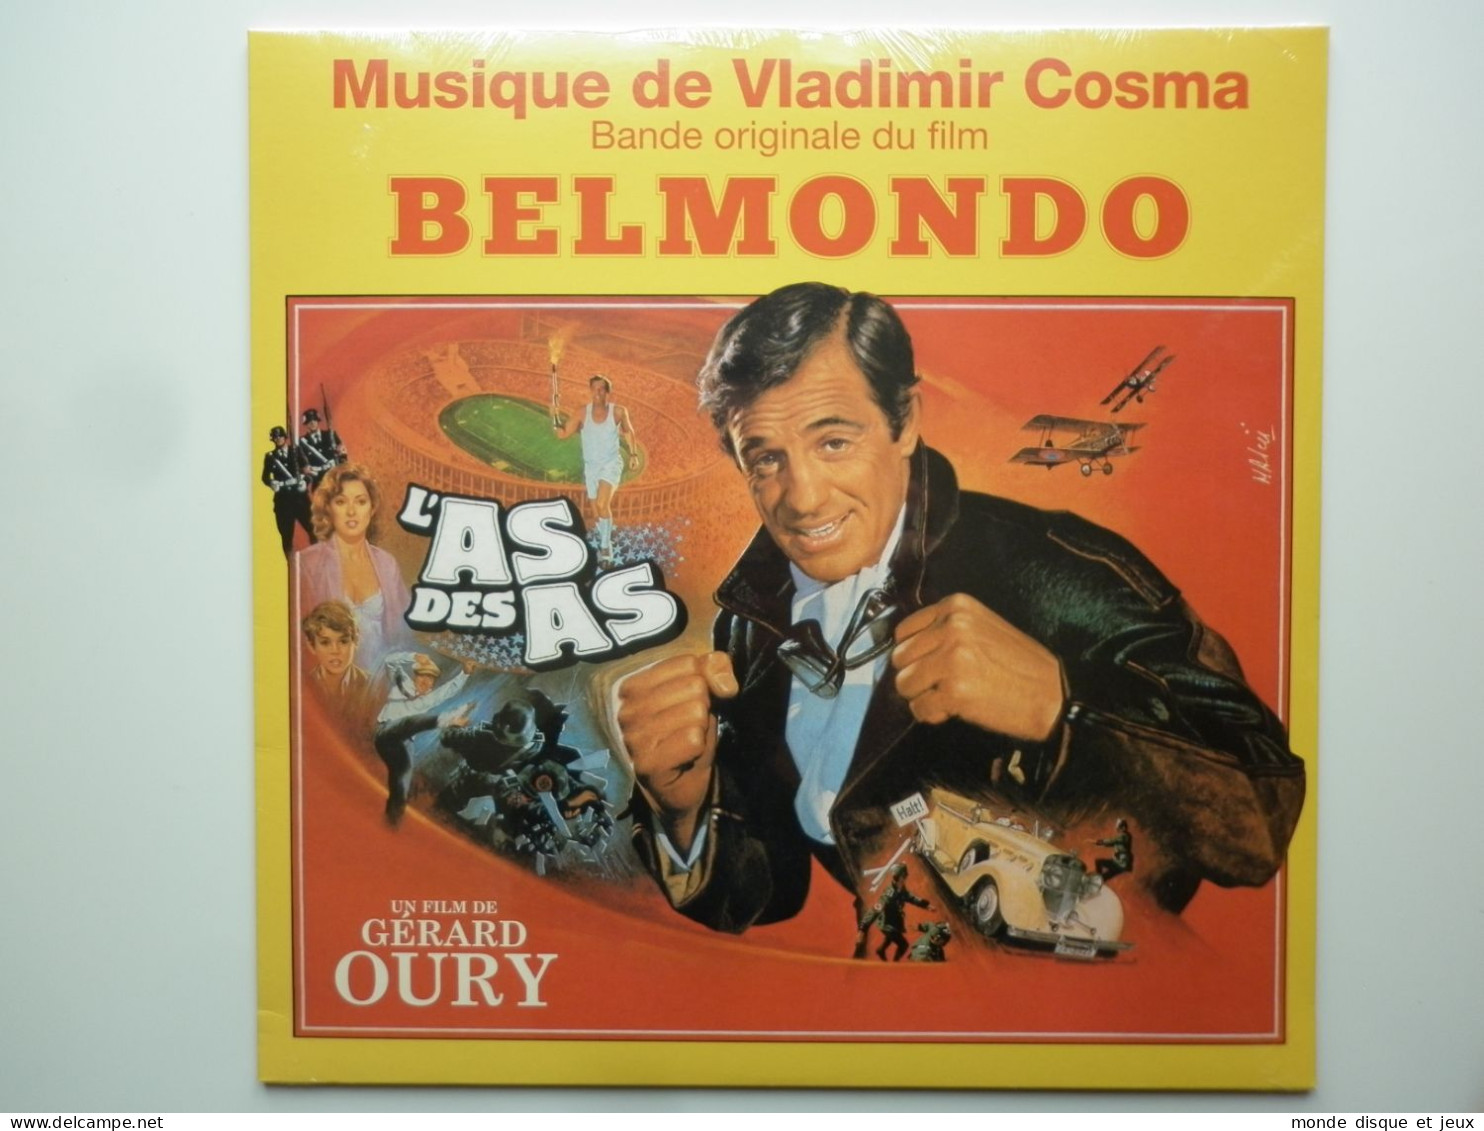 Vladimir Cosma Album 33Tours Vinyle Jean Paul Belmondo L'As Des As Bof - Autres - Musique Française